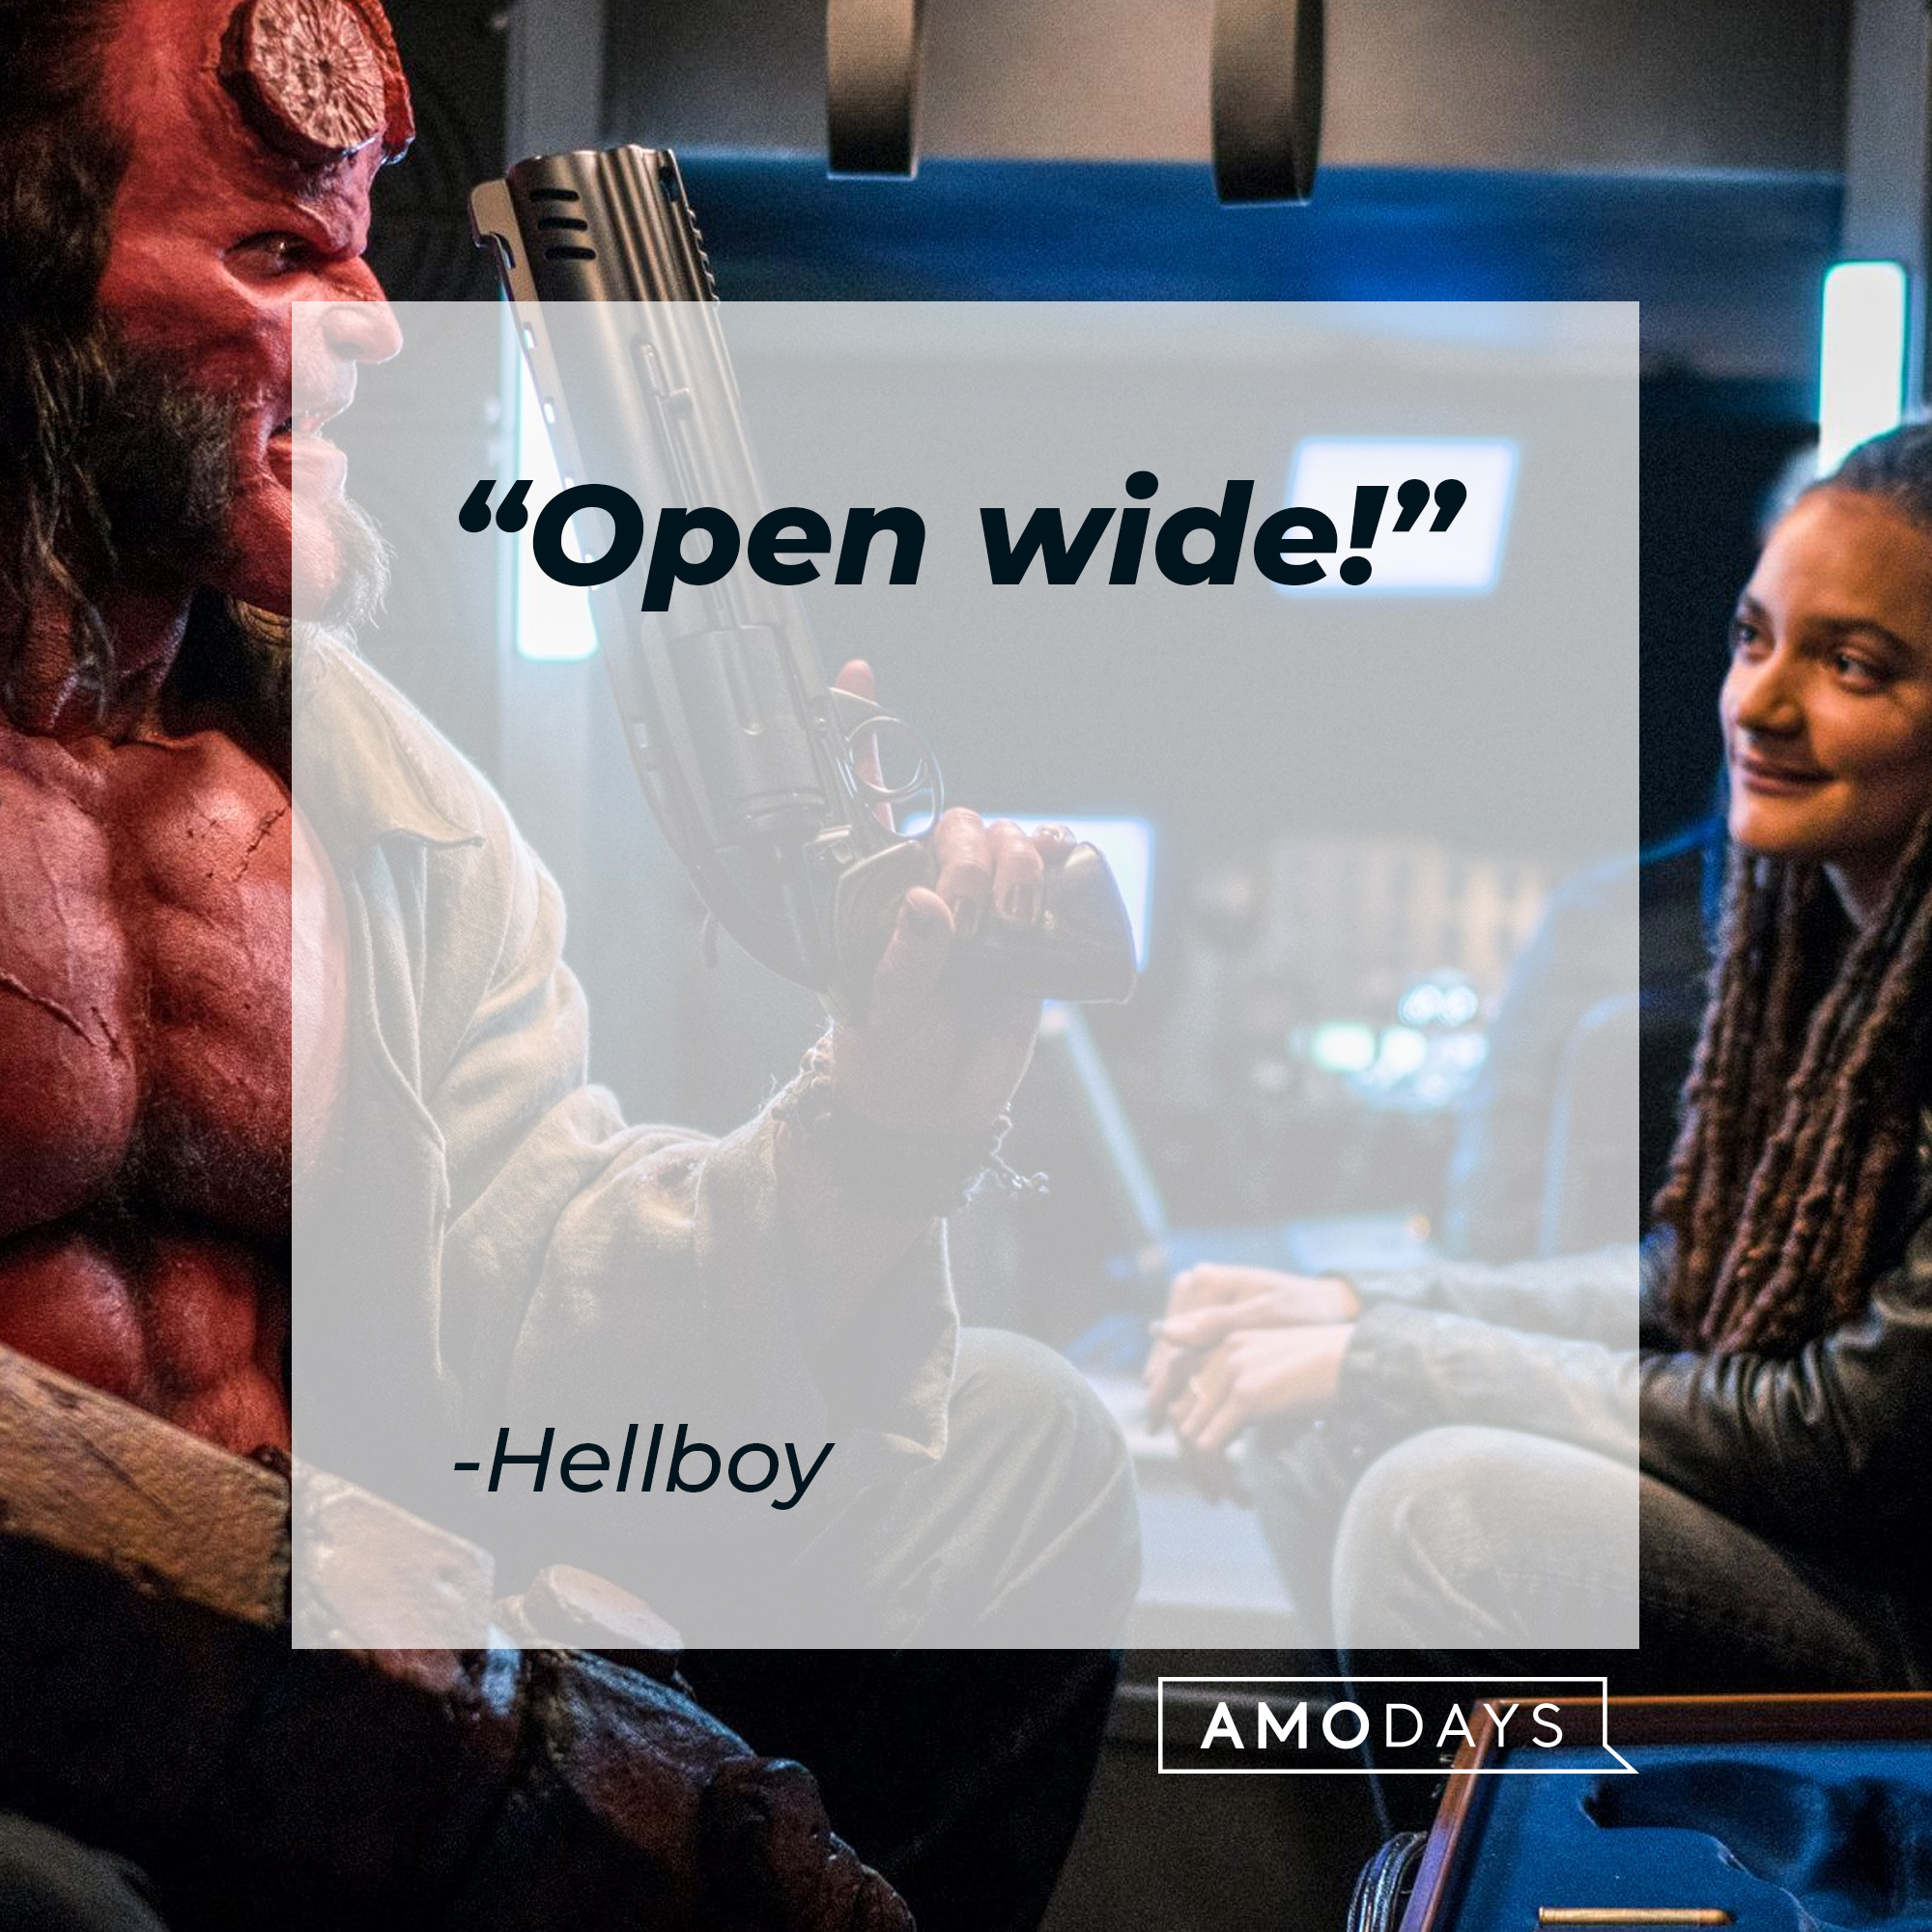 Hellboy's quote: "Open wide!" | Source: facebook.com/hellboymovie